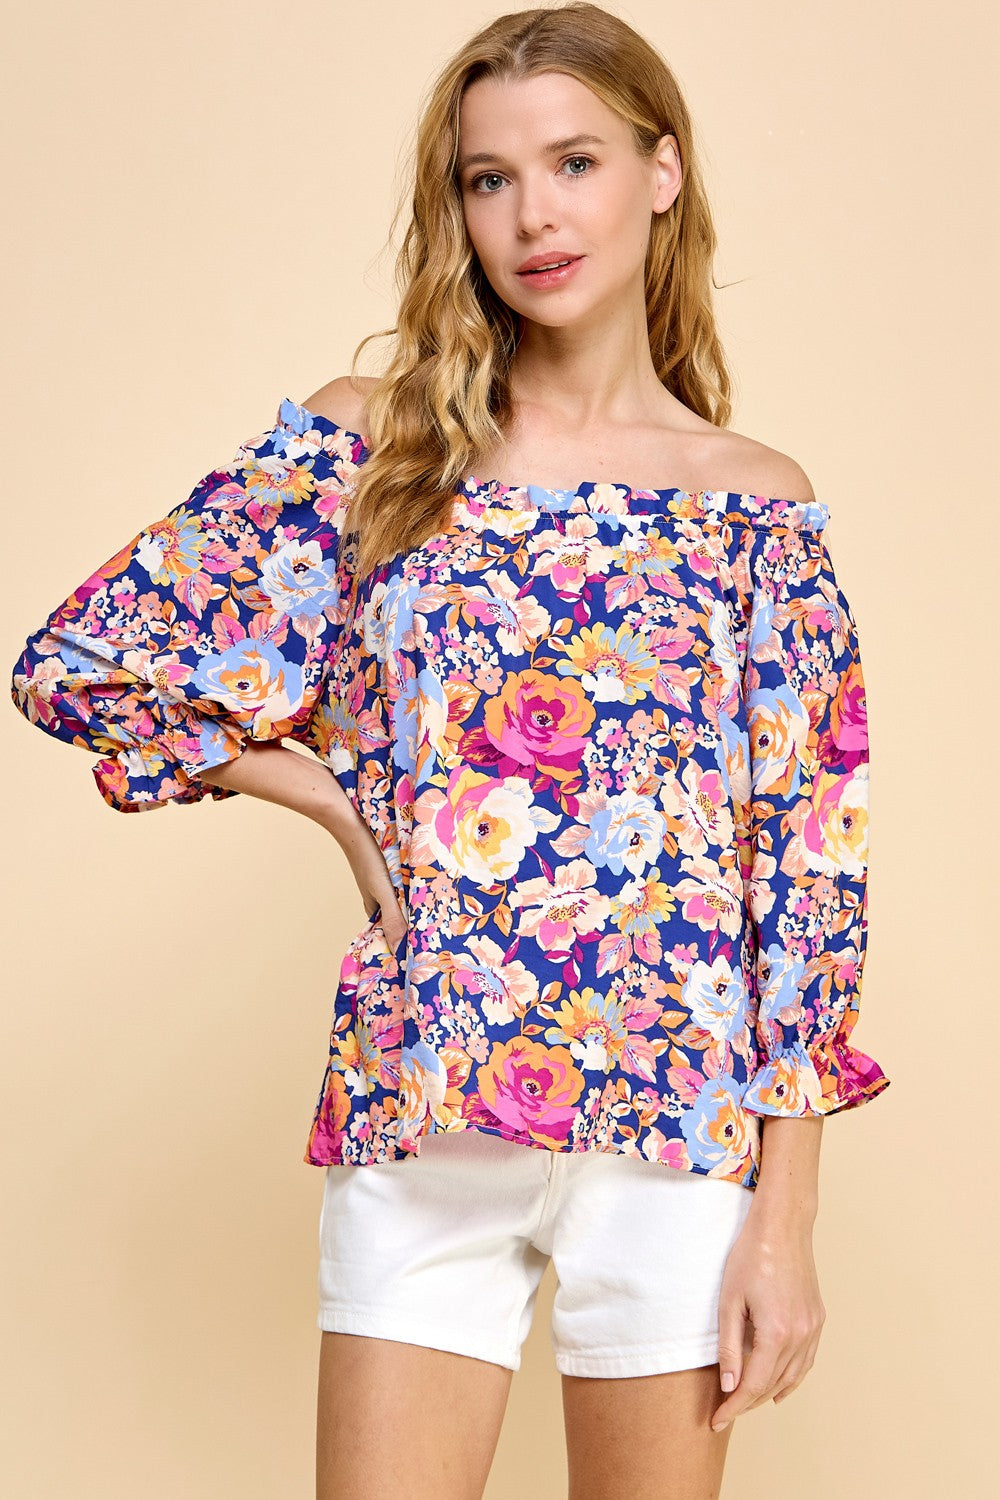 Floral off shoulder blouse in navy * on sale